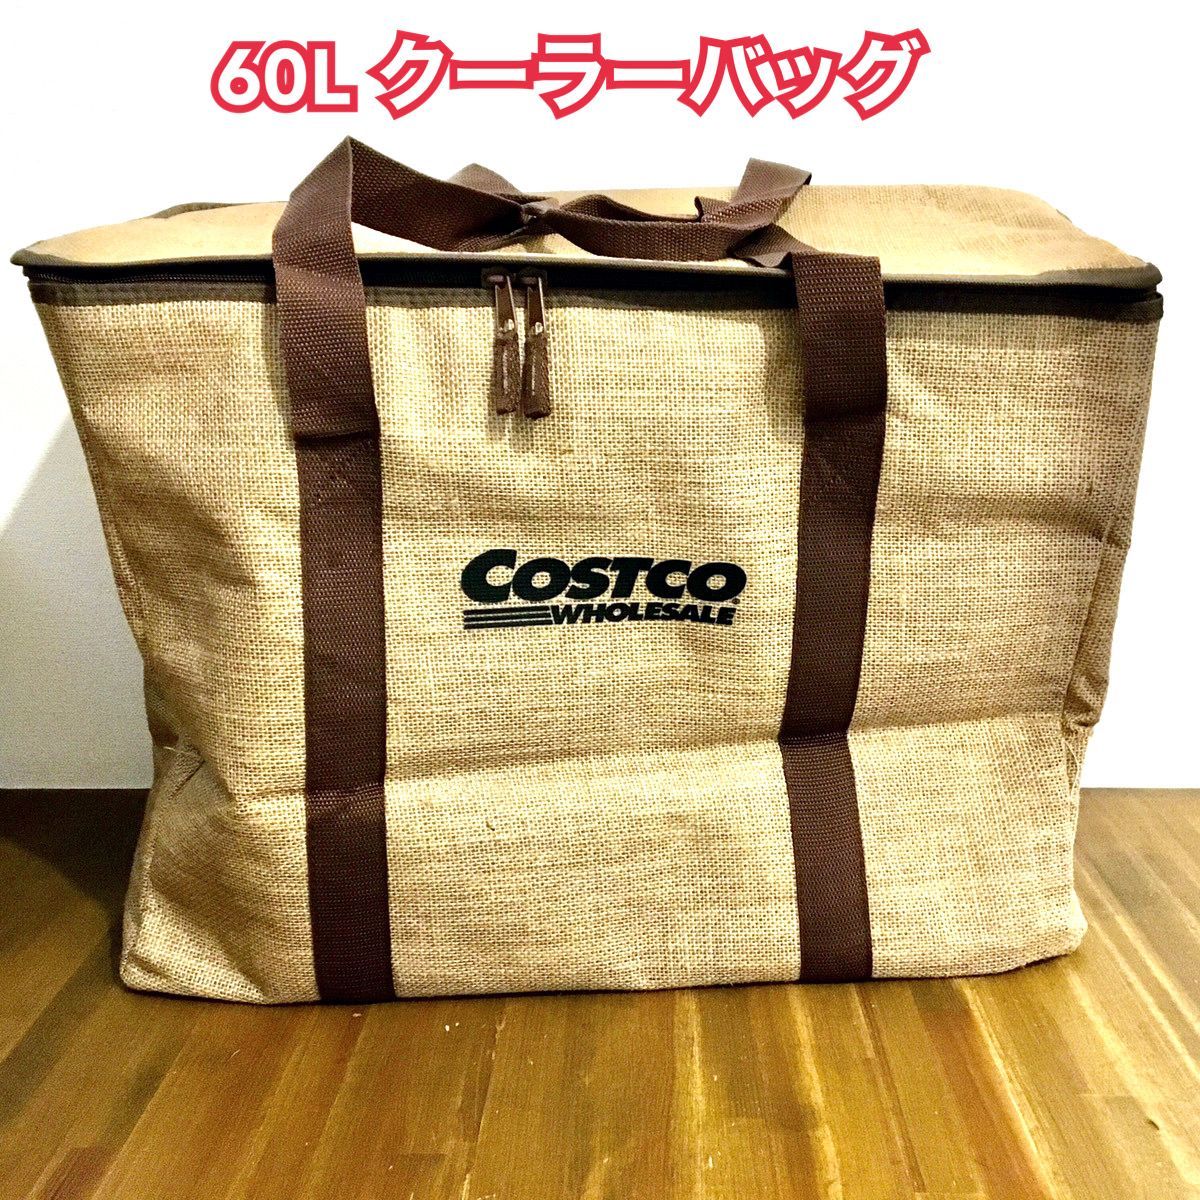 新品 Costco コストコ サスティナブル ジュート クーラーバッグ 60L